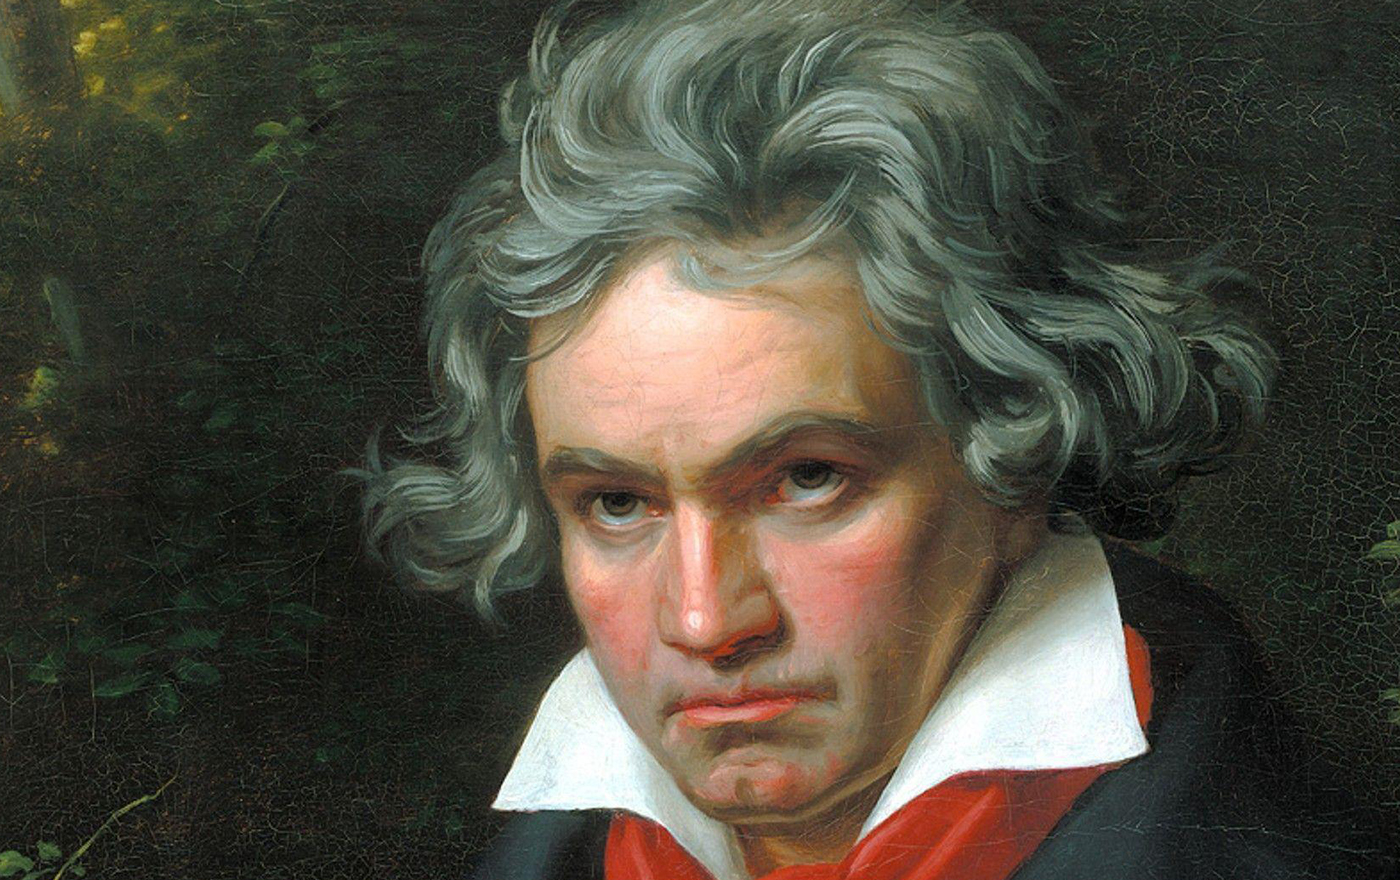 لودویگ ون بتهوون (Ludwig van Beethoven)